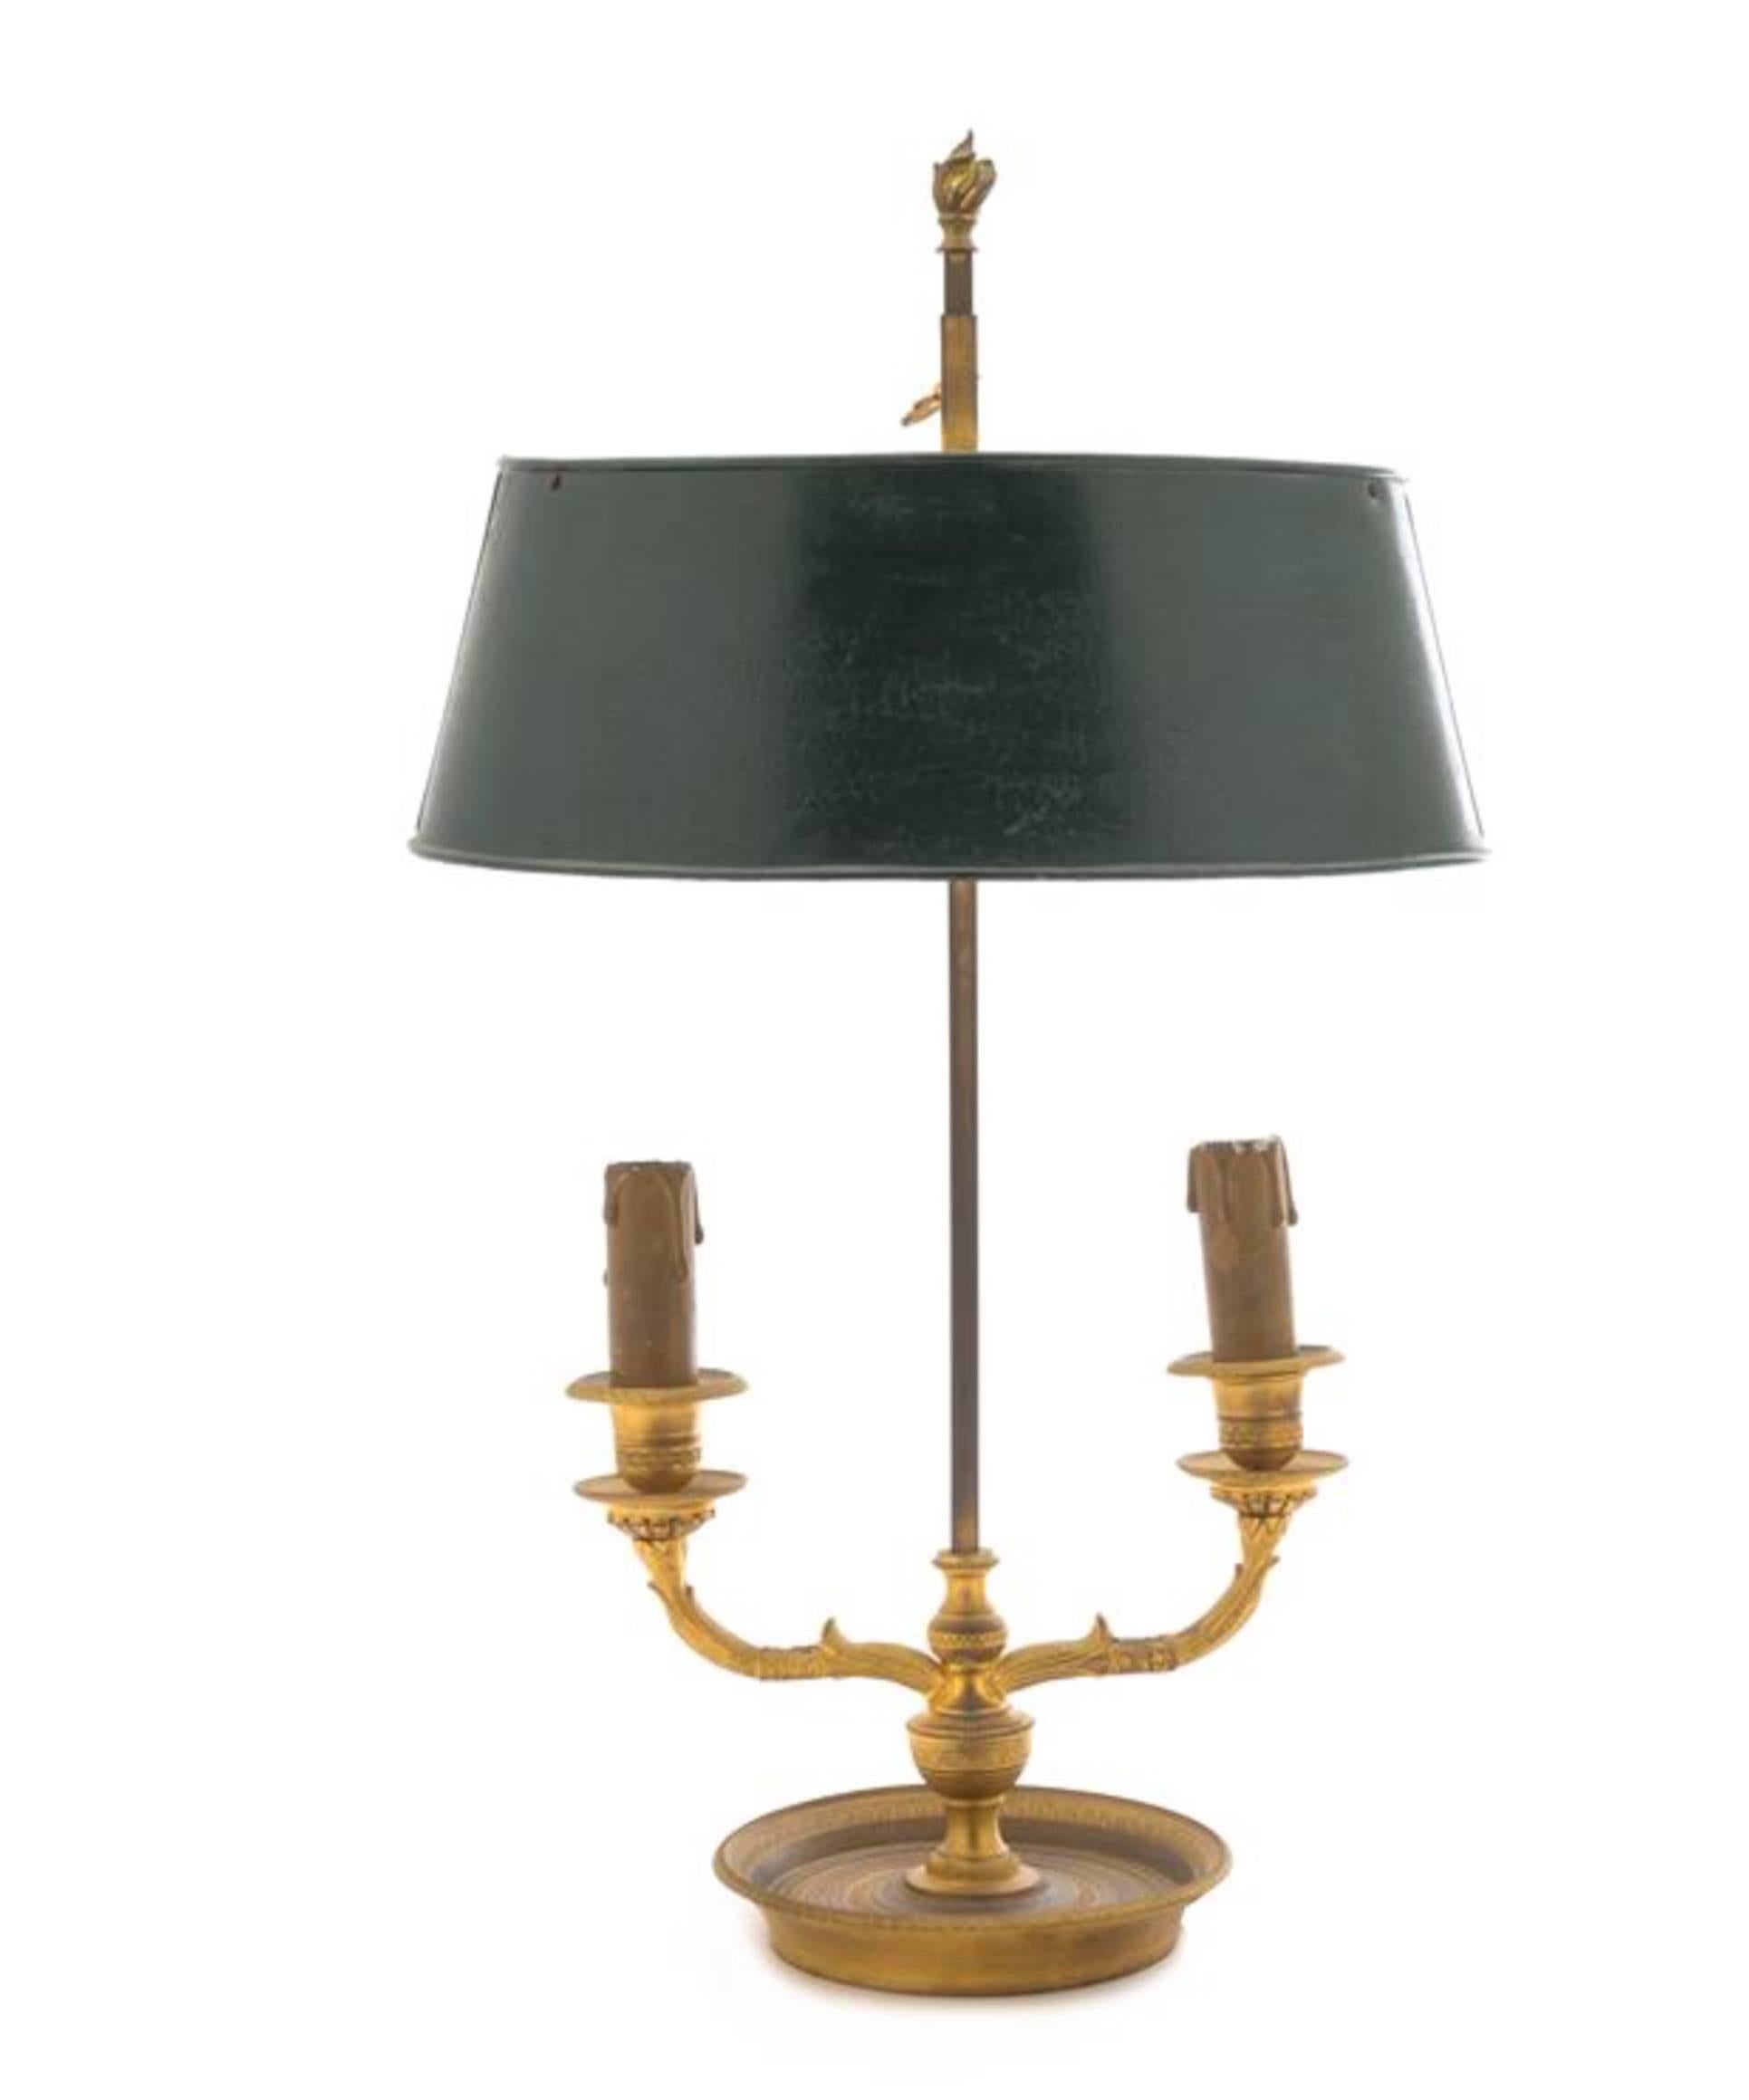 Lampe Bouillotte à deux lumières en bronze doré de style Empire.
19ème siècle
avec un fleuron en forme de flamme et deux bras de bougie, avec un abat-jour en tôle.
Mesures : Hauteur 19 pouces.